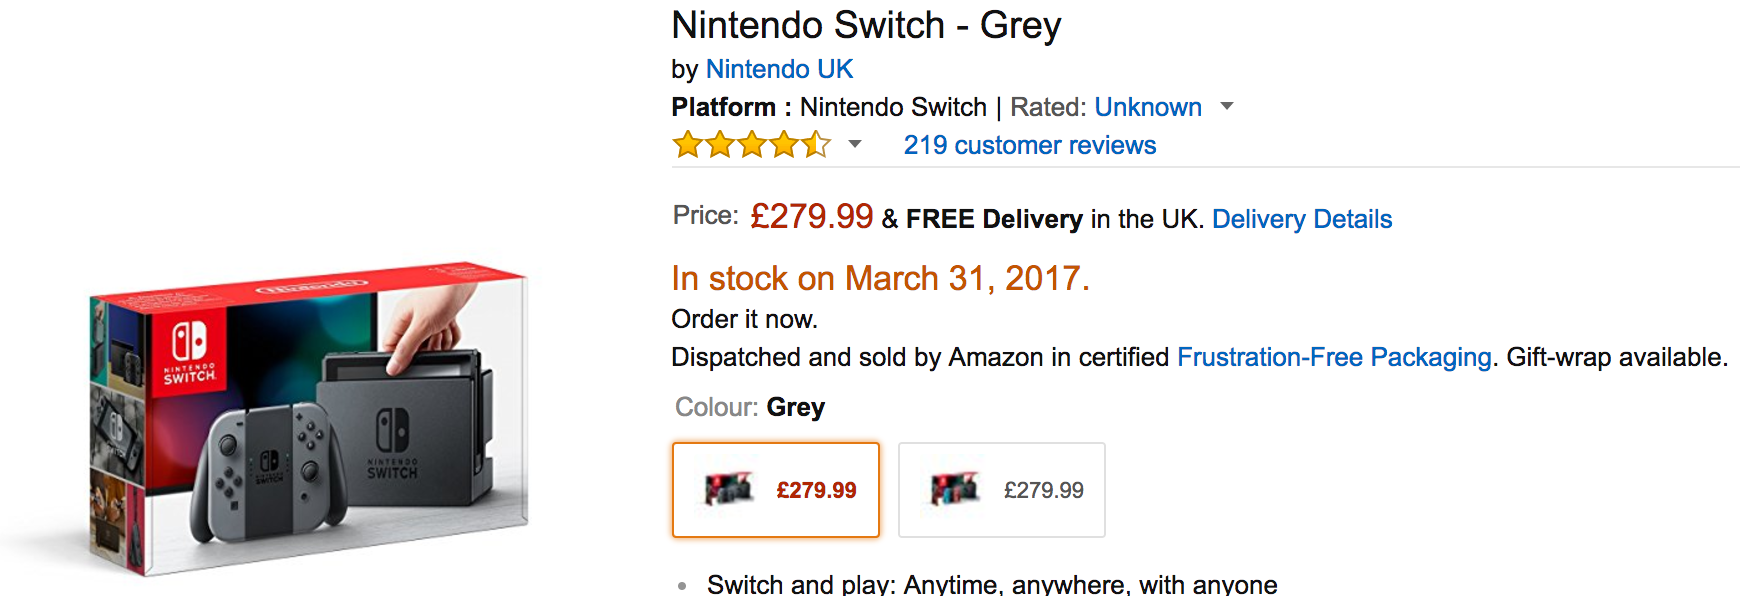 玩意儿 英亚预购原价nintendo Switch 了 3 月31 发货 知乎